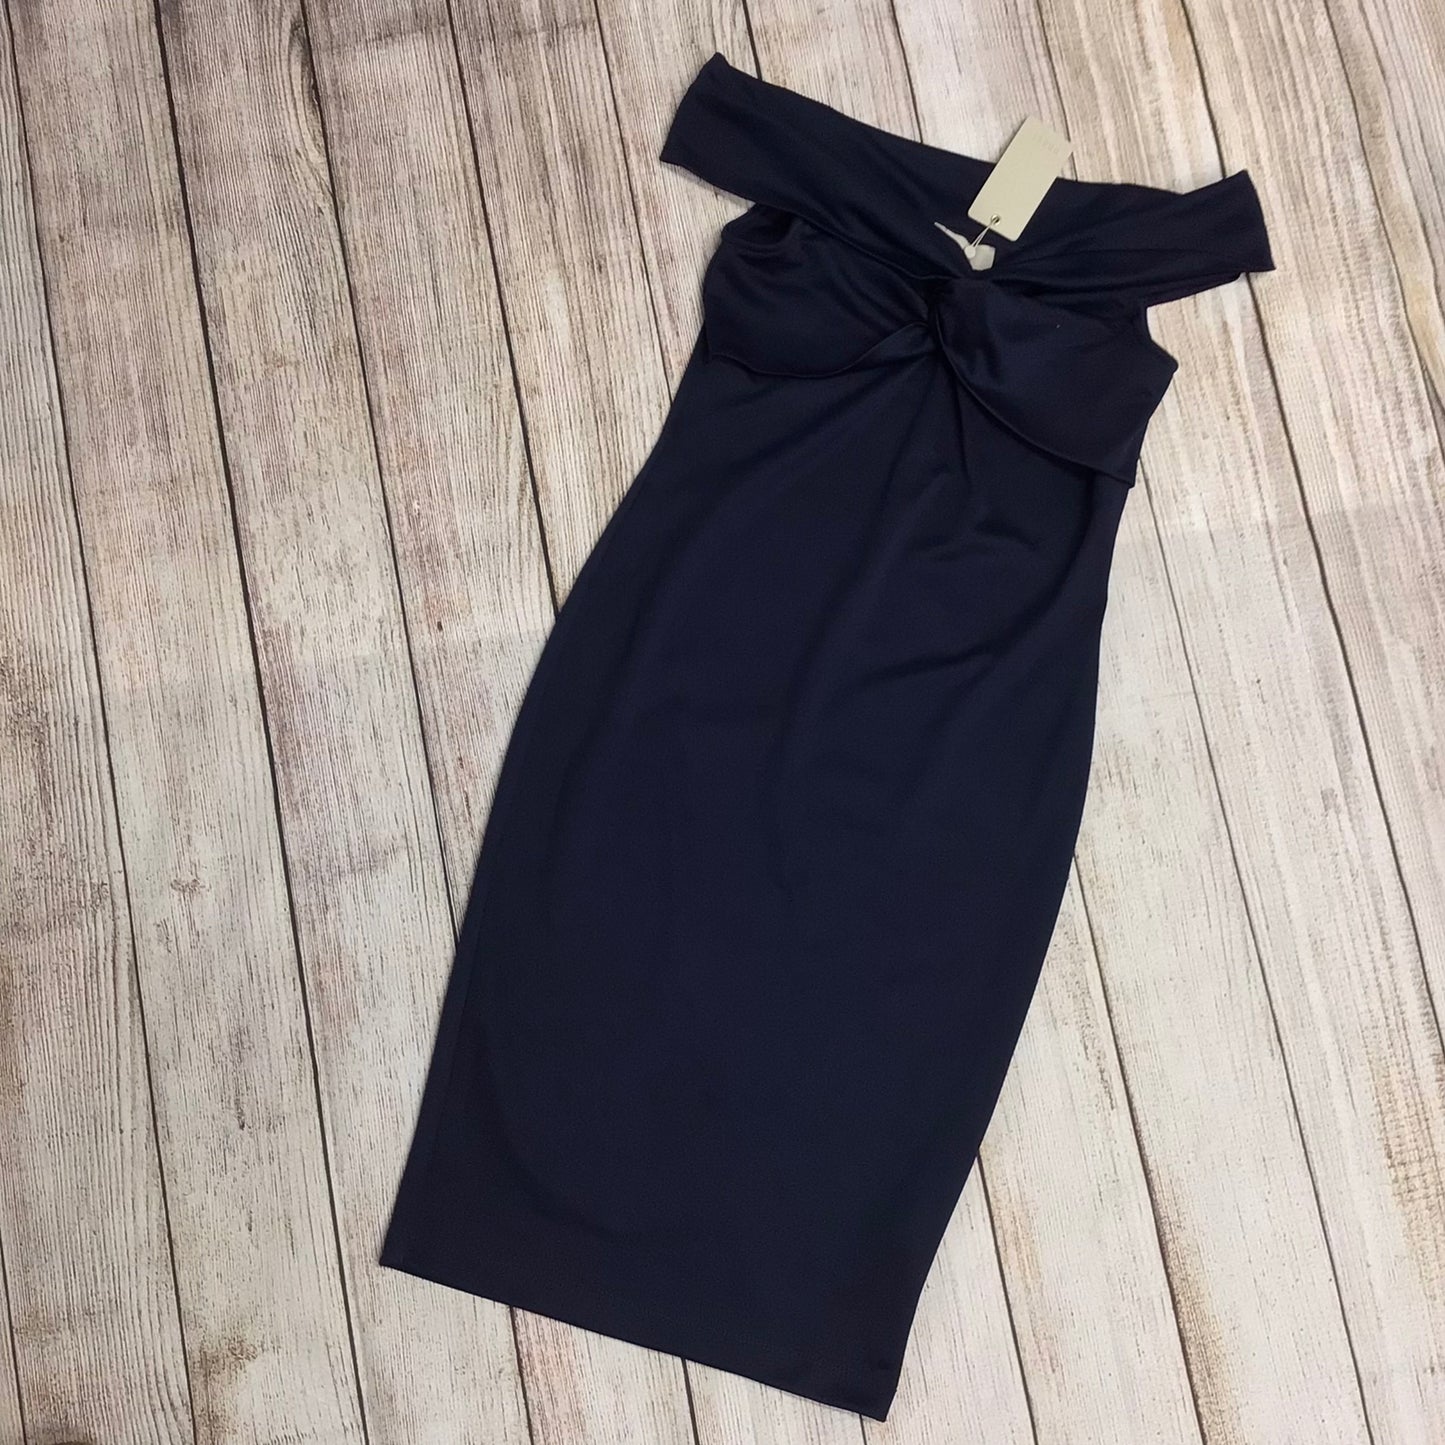 BNWT Coast Navy Blue Twist Bardot Neckline Ponte Dress RRP £85 Size 10